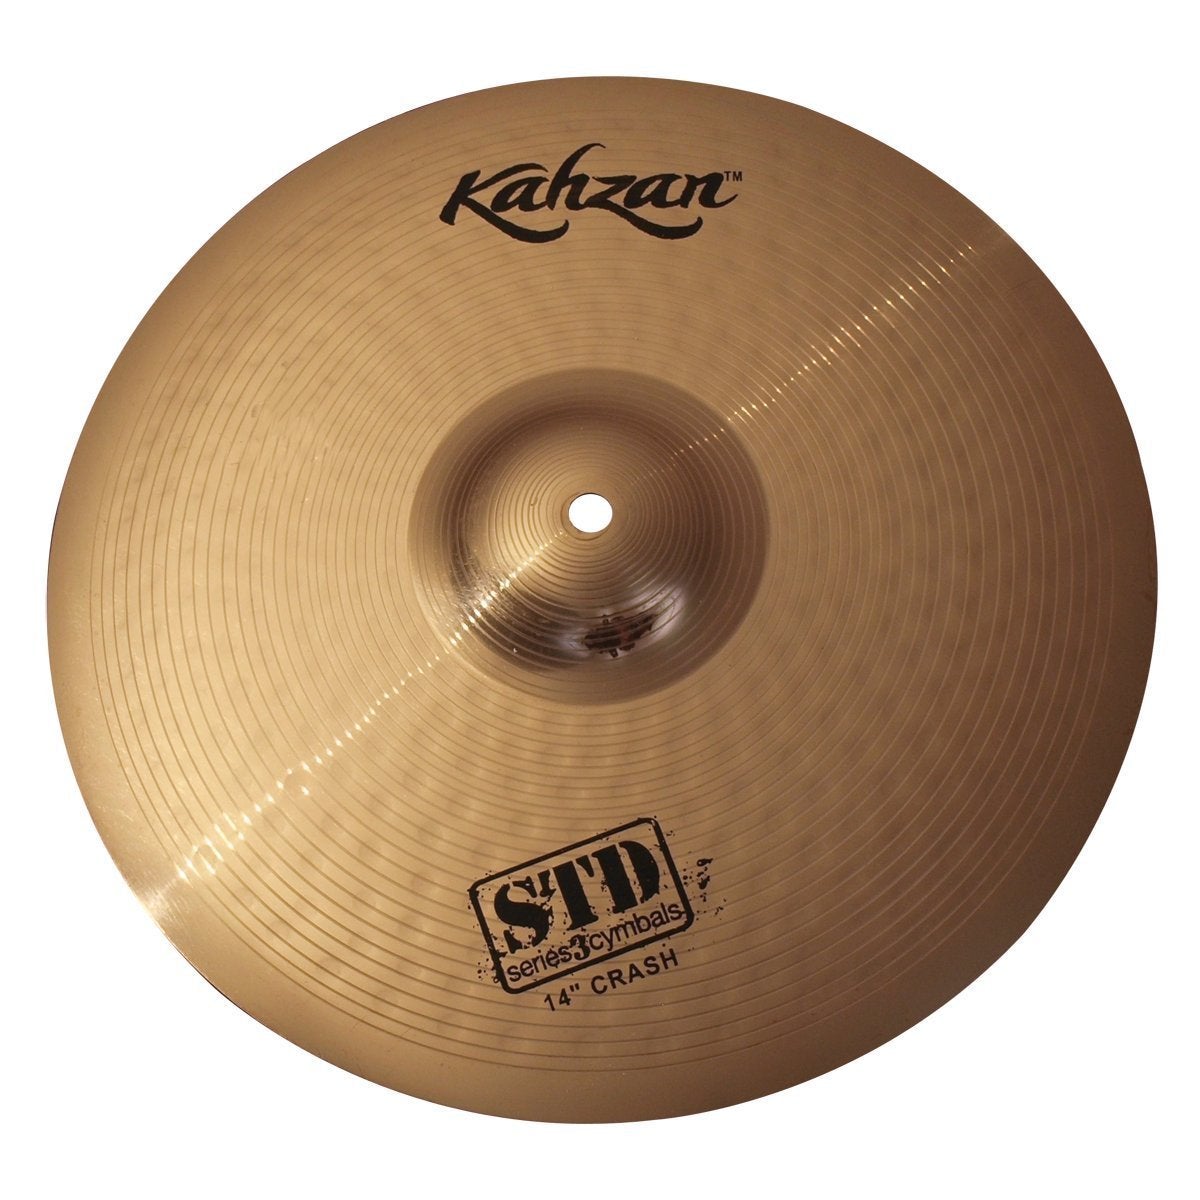 Kahzan 'STD-3 Series' Crash Cymbal (14")-KC-STD3-14C